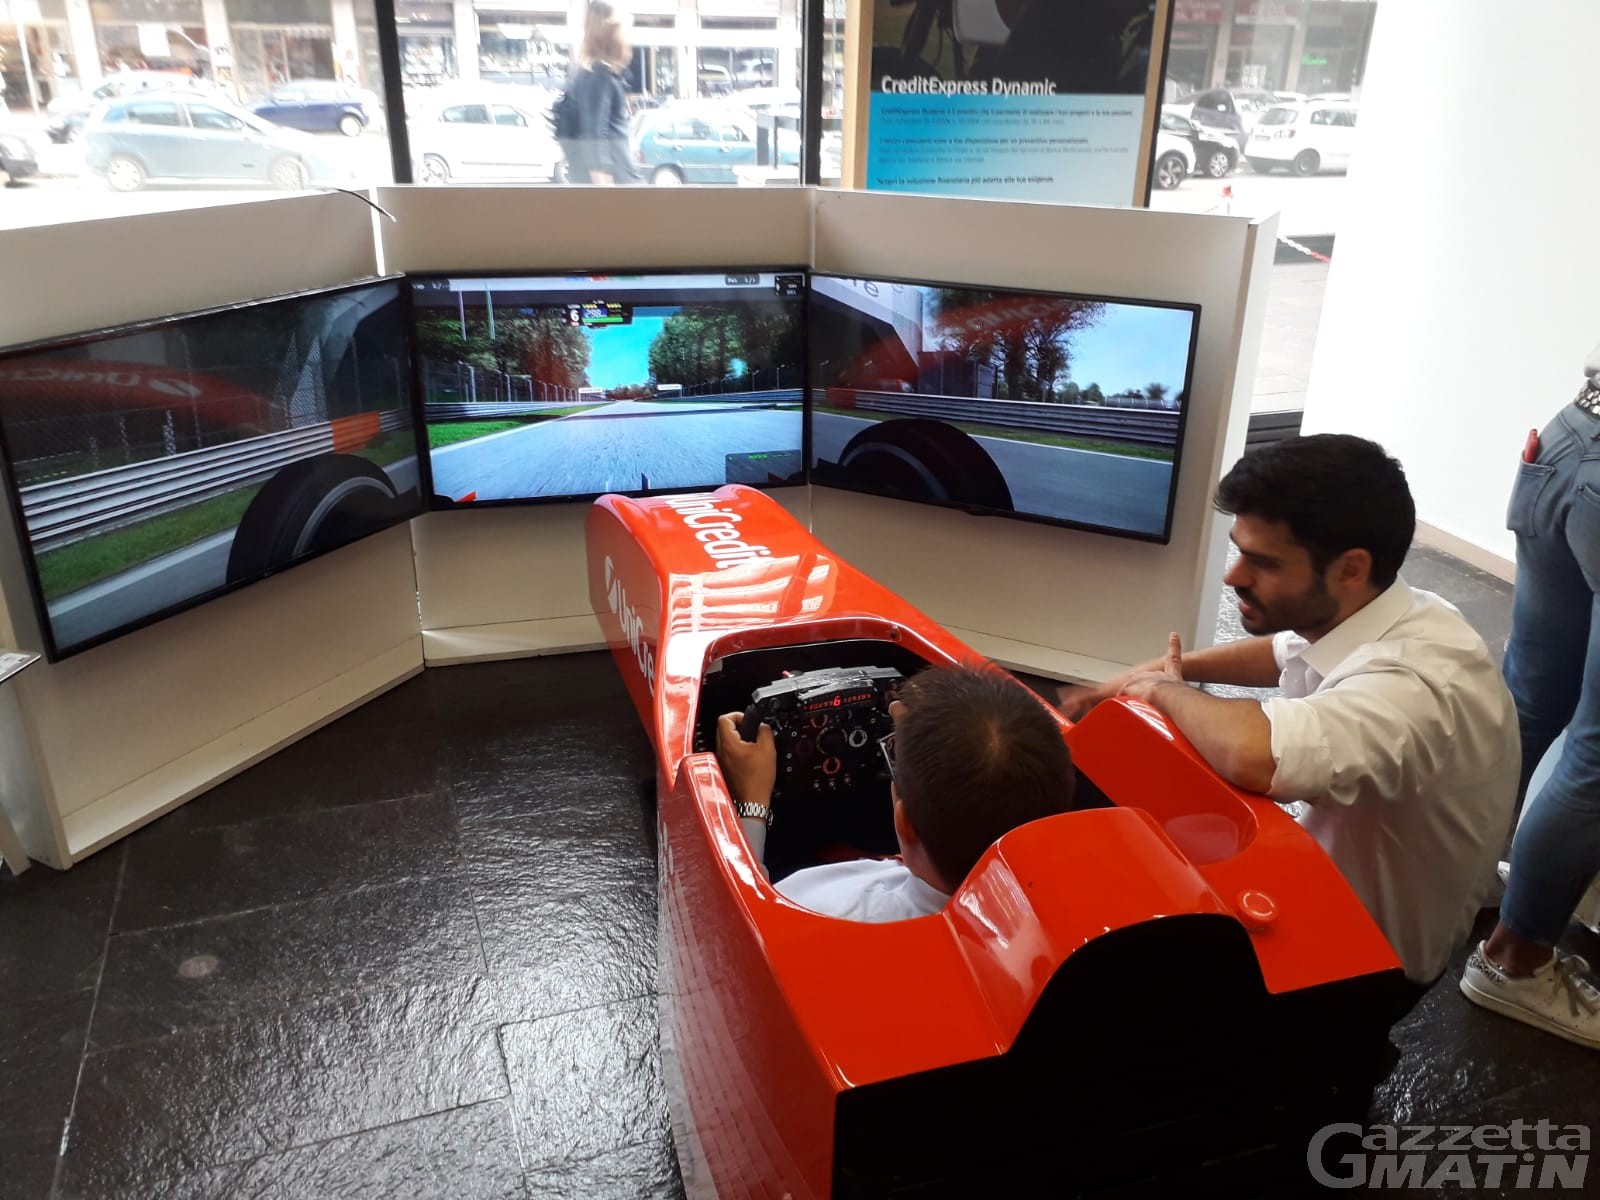 Safety Drive Tour: arriva ad Aosta il simulatore di Formula 1